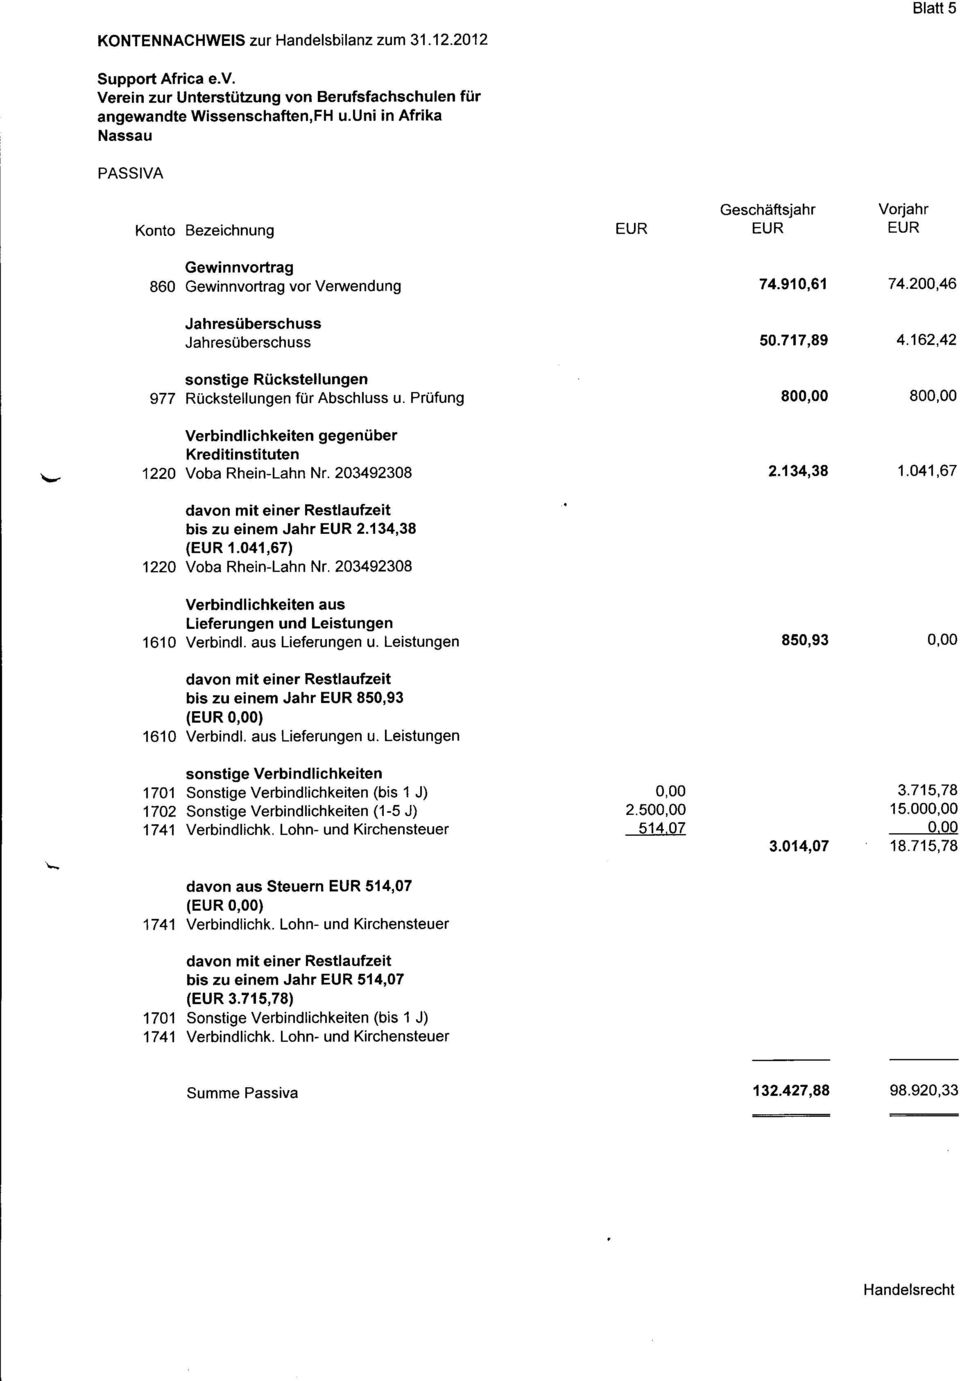 Prüfung Verbindlichkeiten gegenüber Kreditinstituten 122O Vba Rhein-Lahn Nr.203492308 davn mit einer Restlaufzeit bis zu einem Jahr 213438 ( 1.041,67) 1220 Vba Rhein-Lahn Nr.